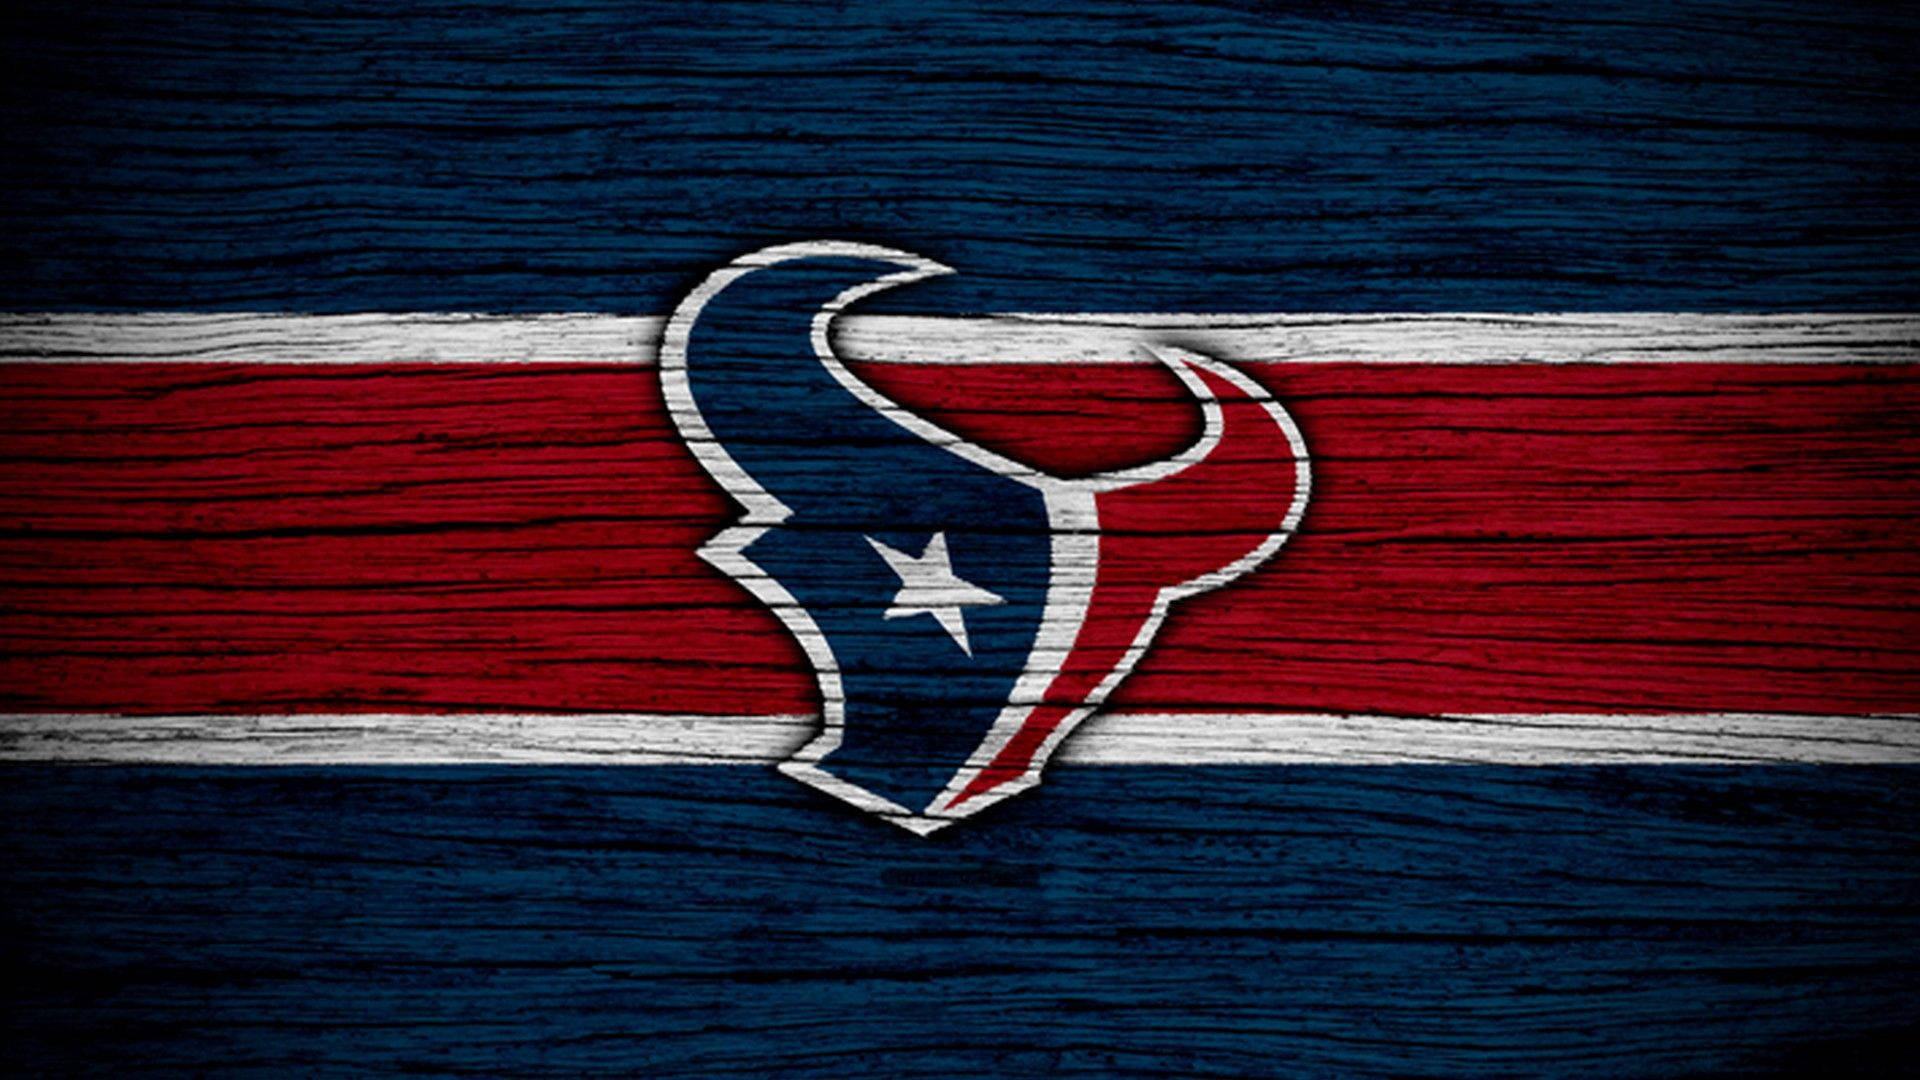 Battle-Ready Houston Texans NFL Football Team Wallpaper